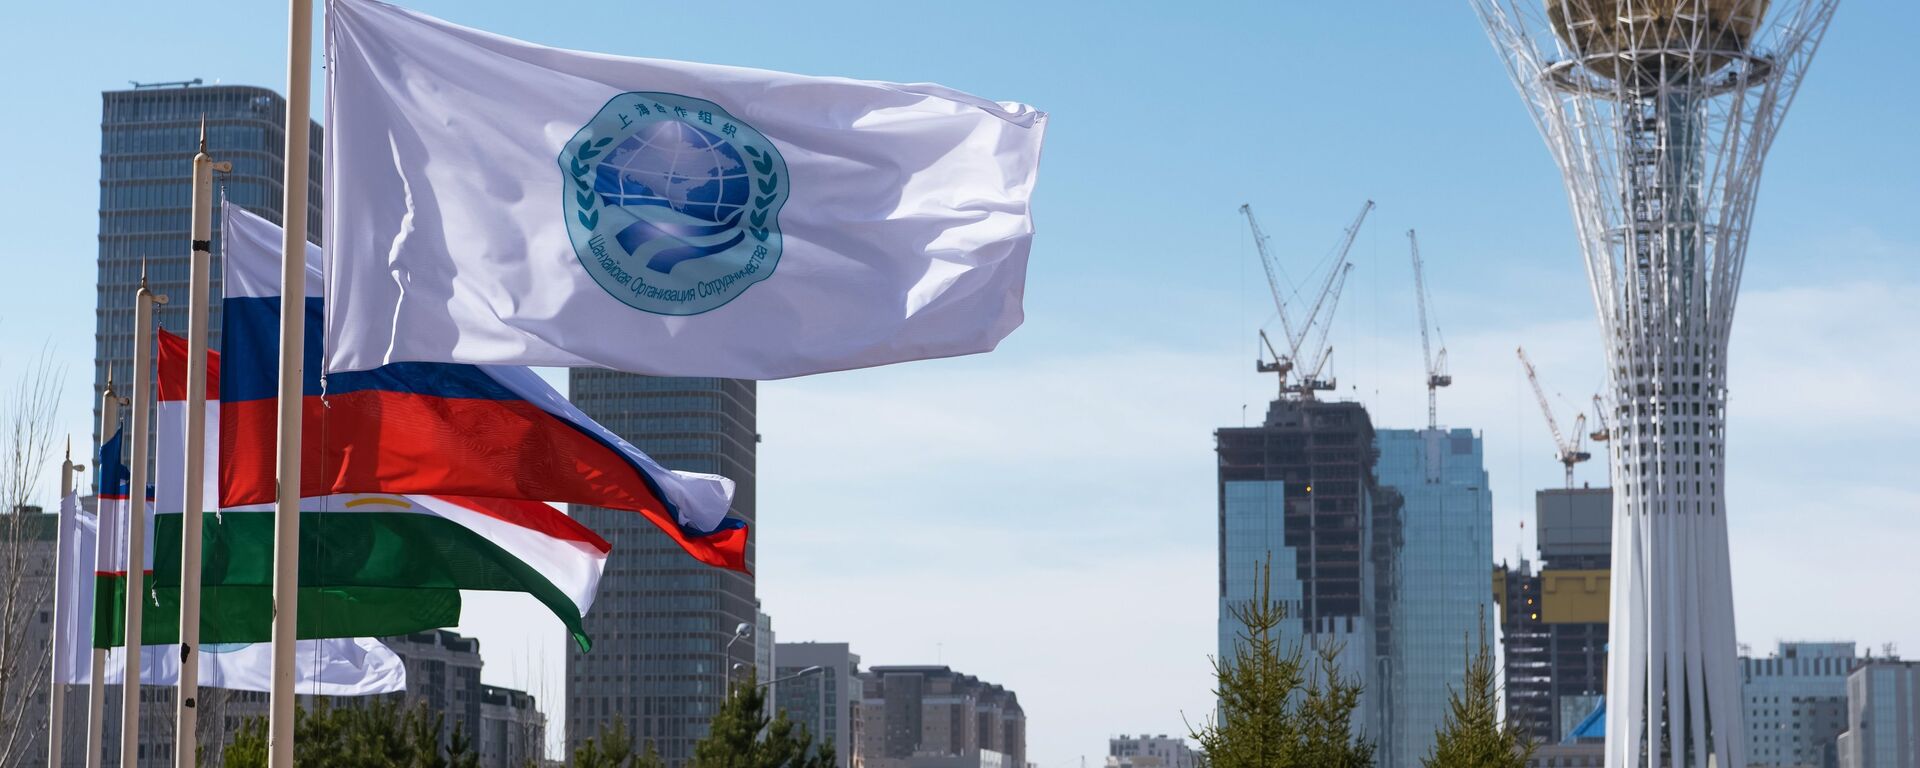 La bandera de la Organización de Cooperación de Shanghái (OCS) y las banderas de sus miembros, Astaná, Kasajistán  - Sputnik Mundo, 1920, 15.08.2022